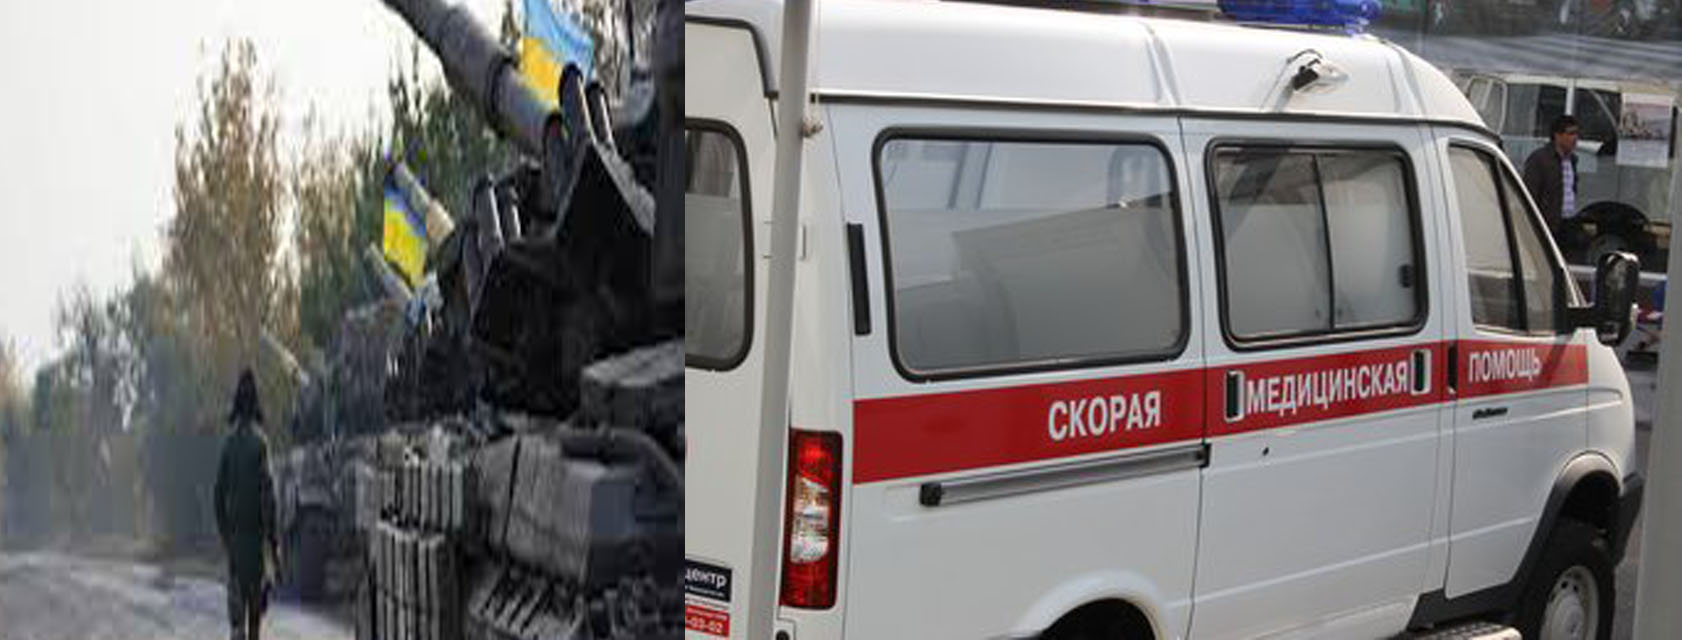 ВСУ открыли огонь по центральным улицам Донецка, под обстрел попали врач и мирный житель в скорой помощи